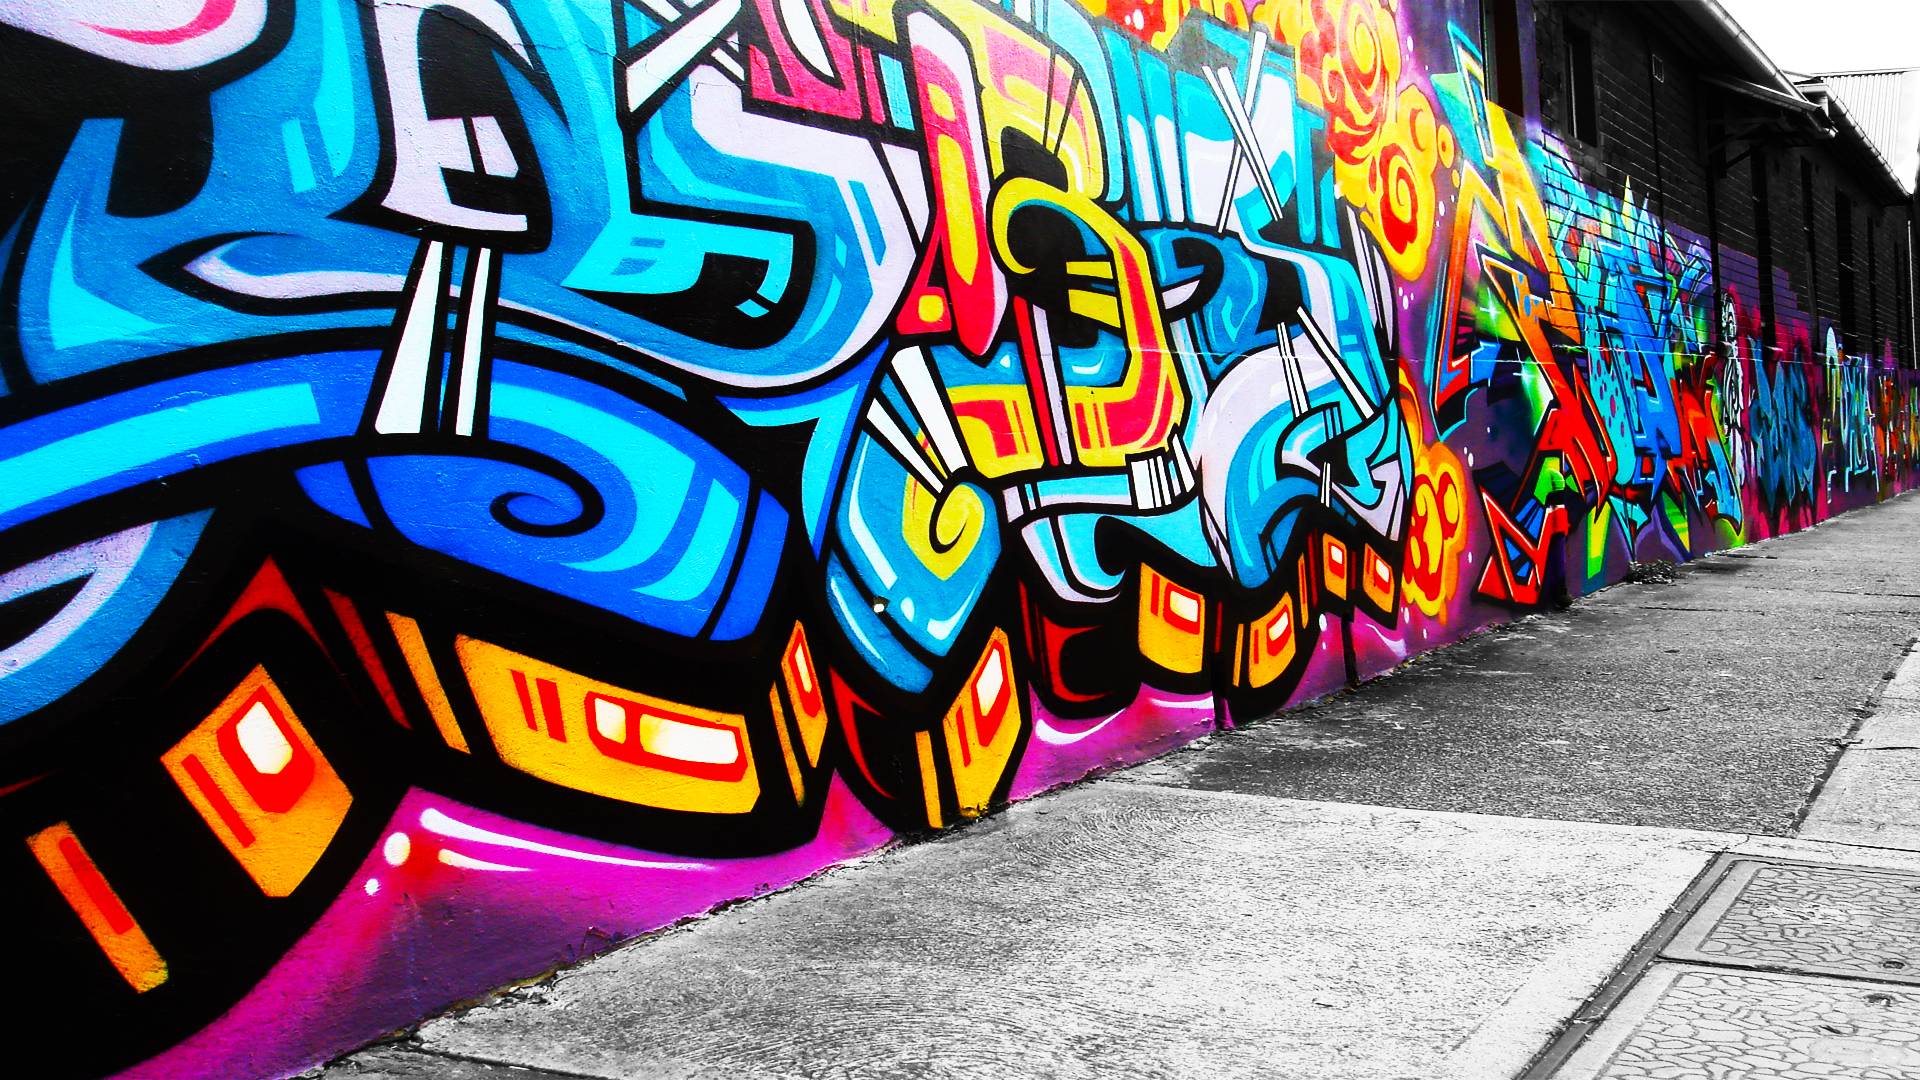 Background graffiti